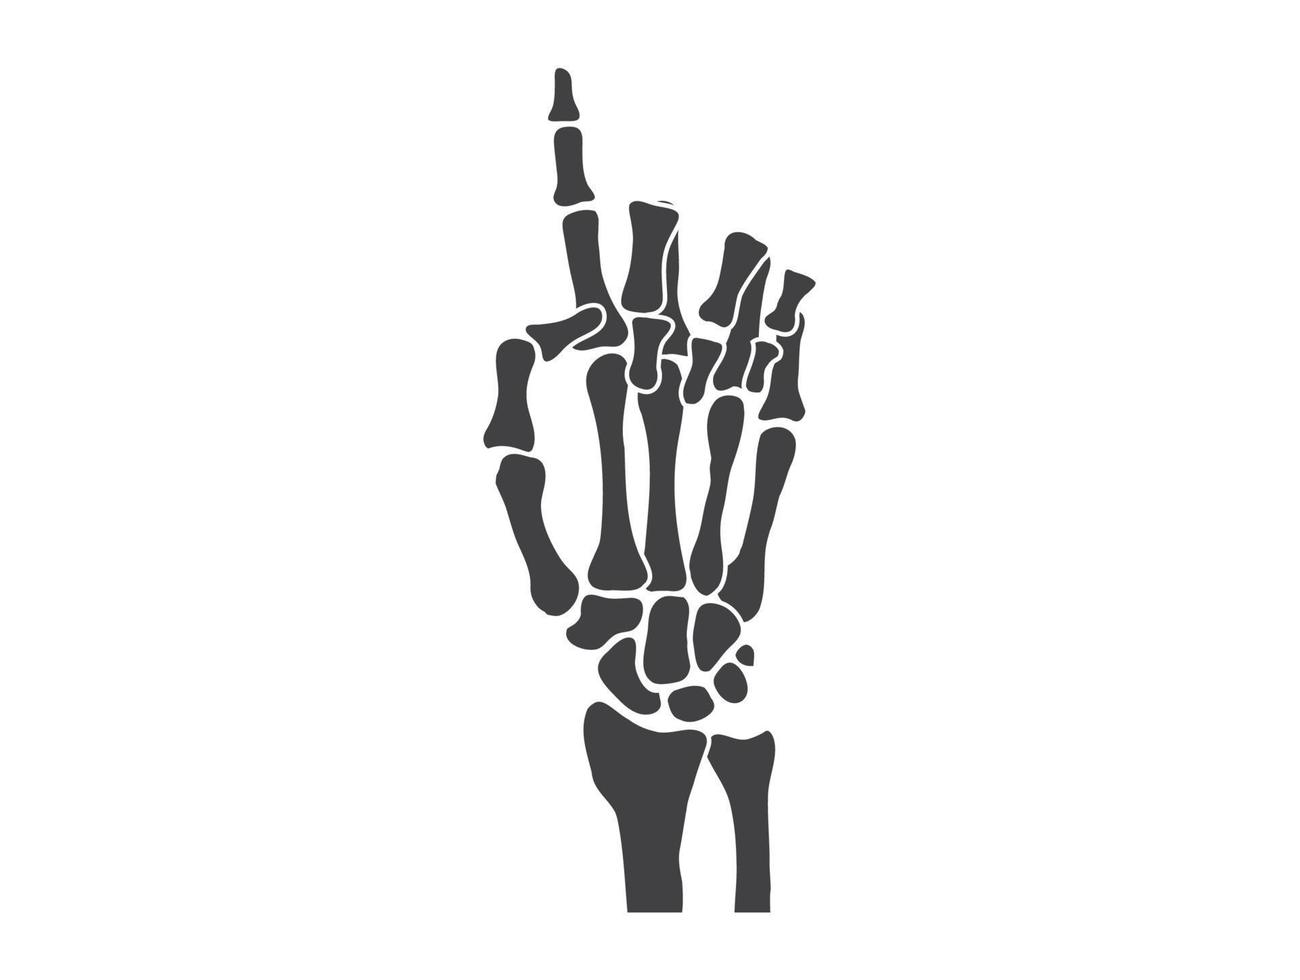 mano huesos blanco y negro humano esqueleto hueso manos vector